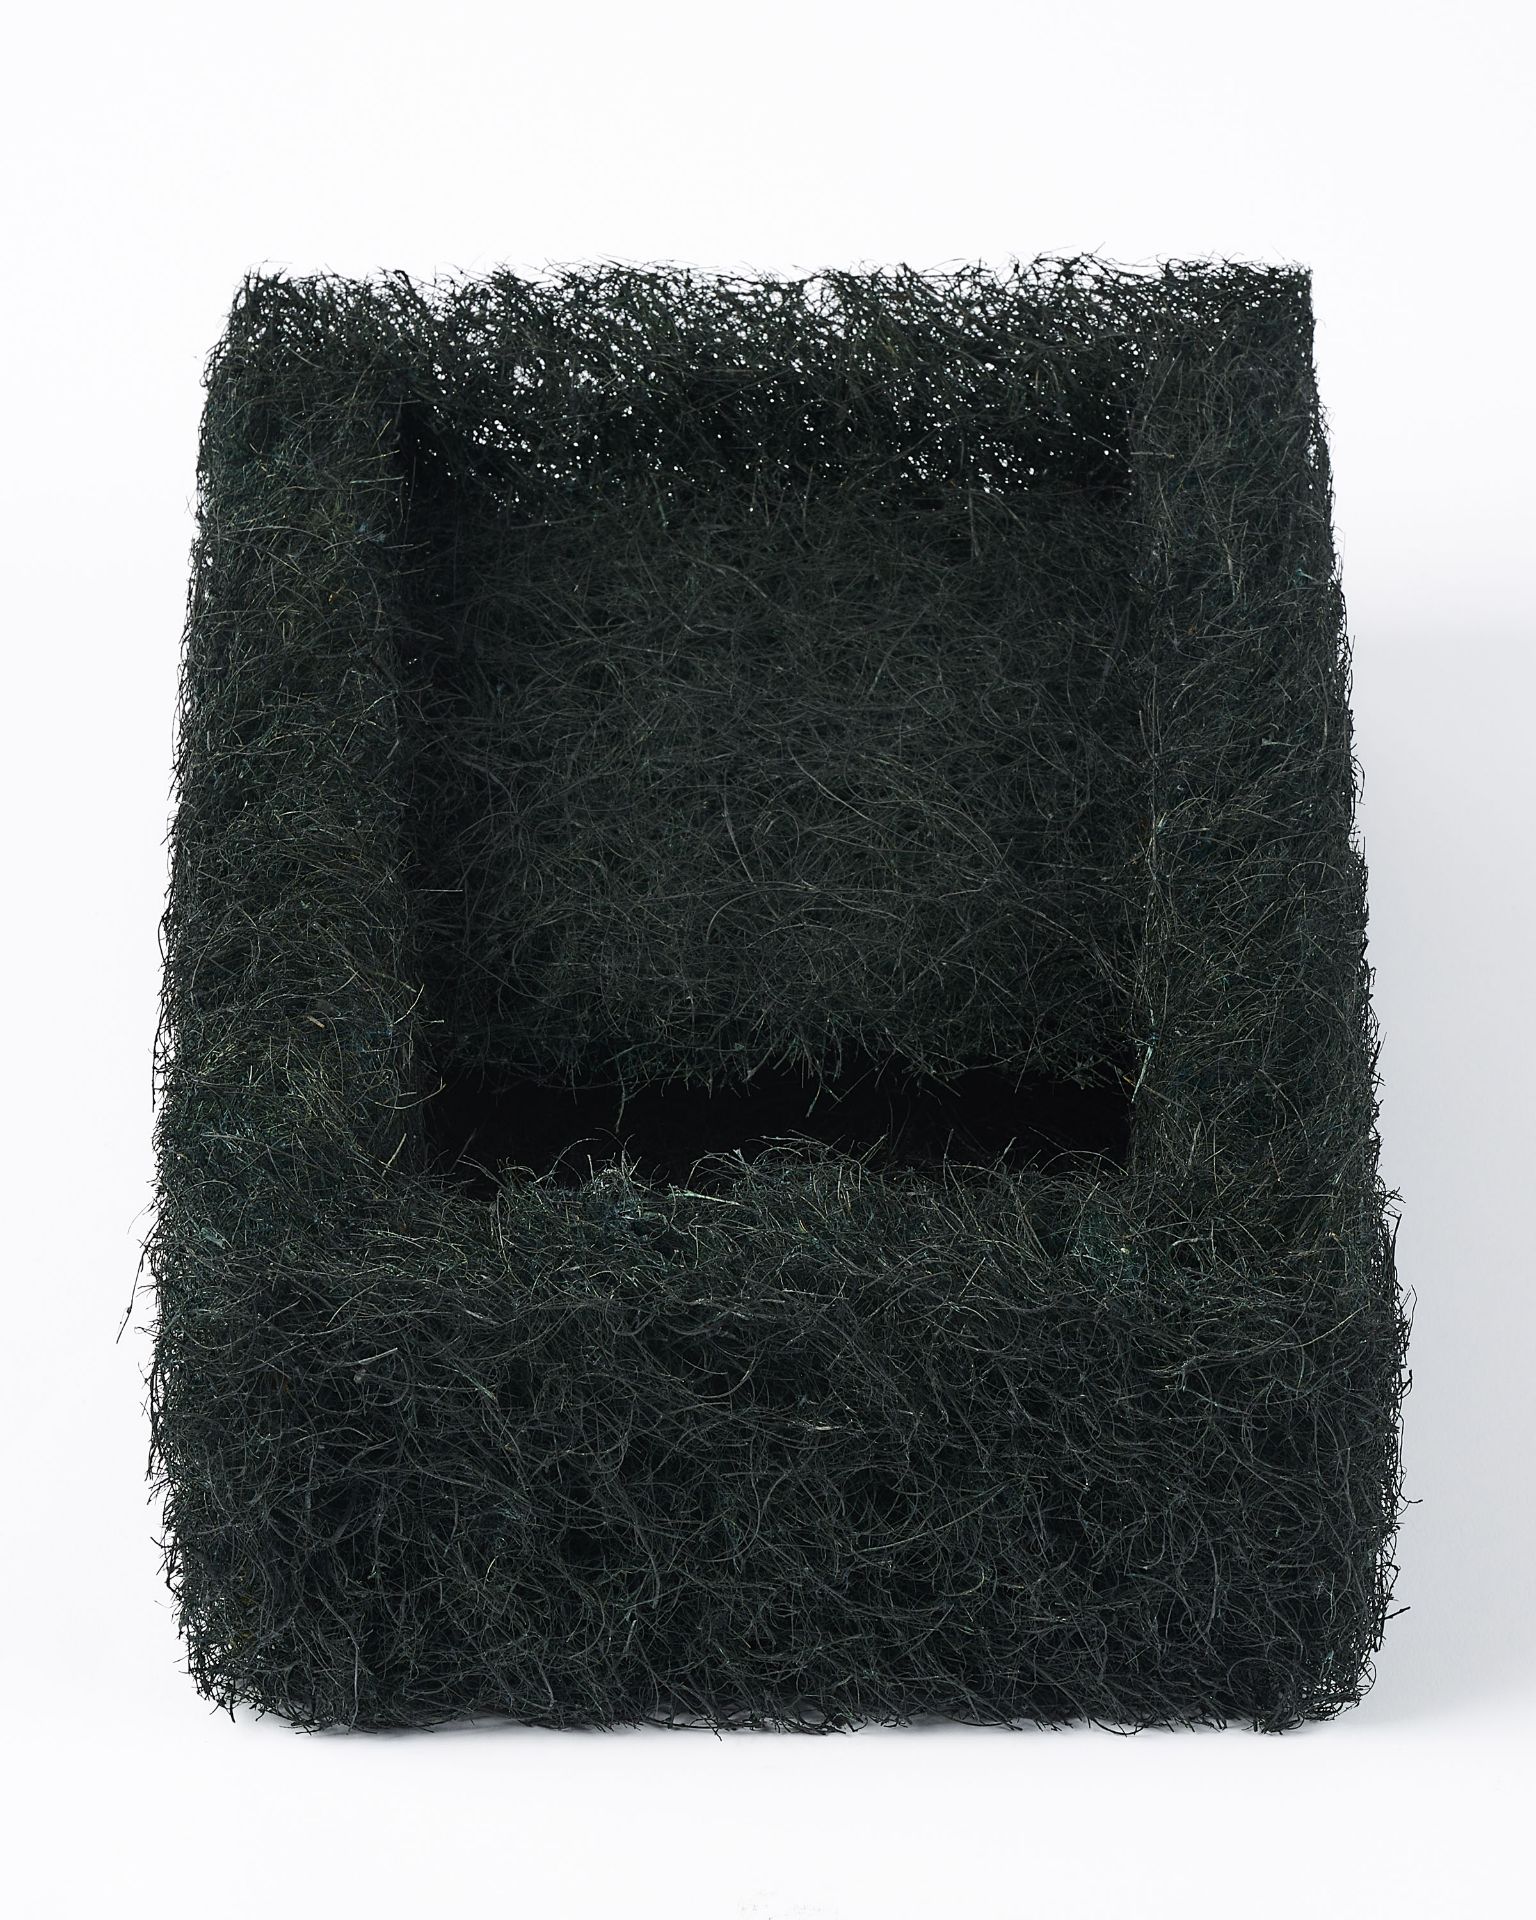 Richard Artschwager: Hair Box (für Parkett 23) - Image 3 of 6